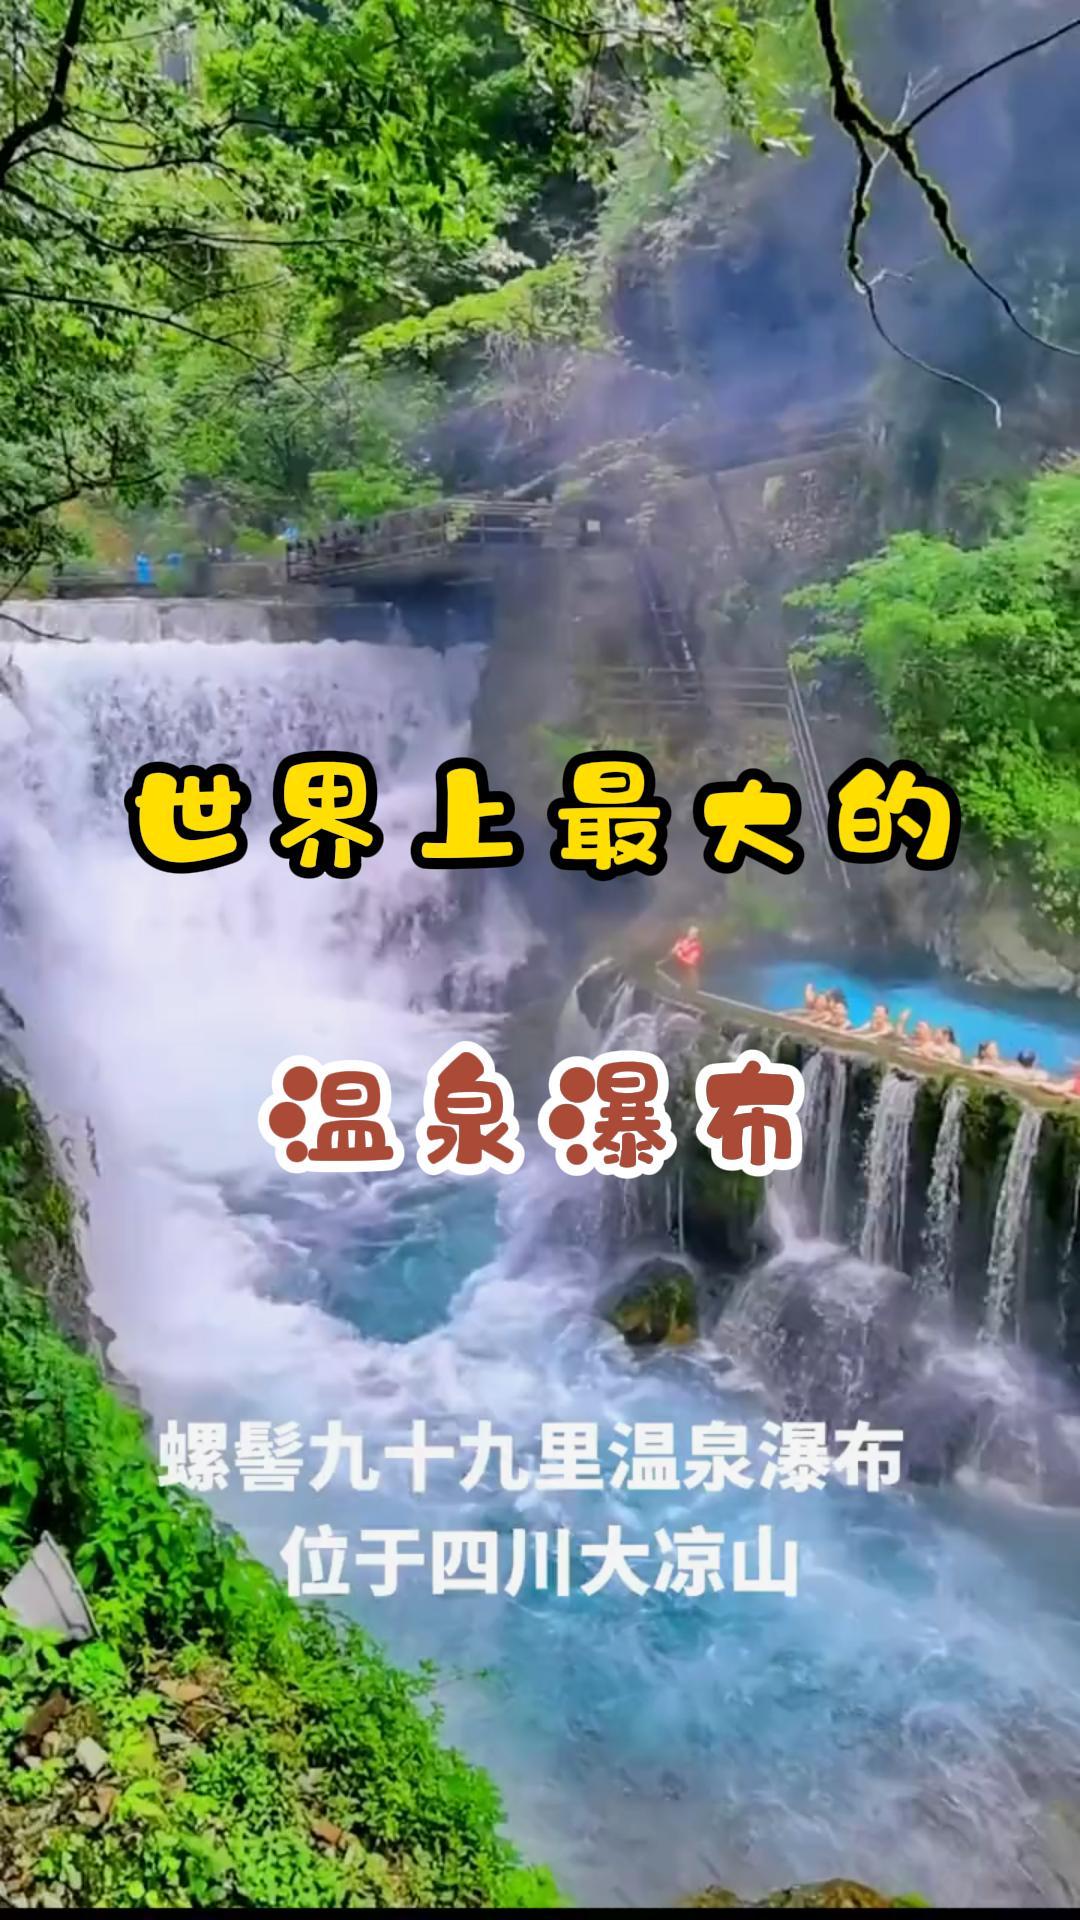 世界上最大的温泉瀑布螺髻九十九里